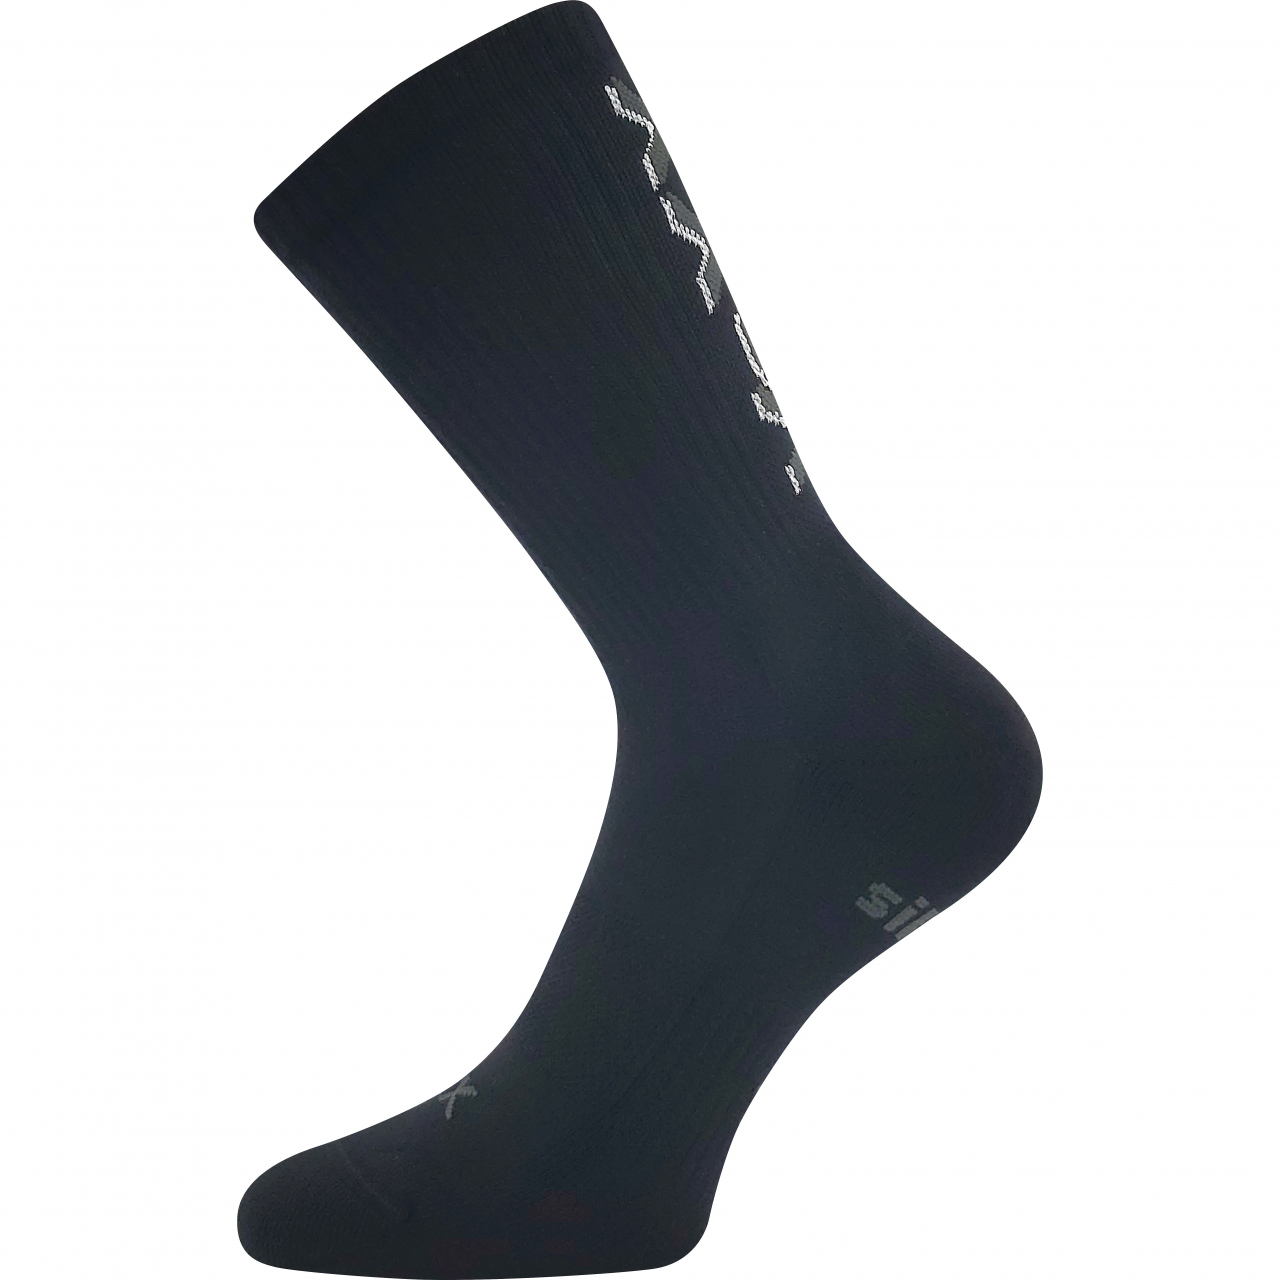 Ponožky unisex sportovní Voxx Legend - černé, 39-42